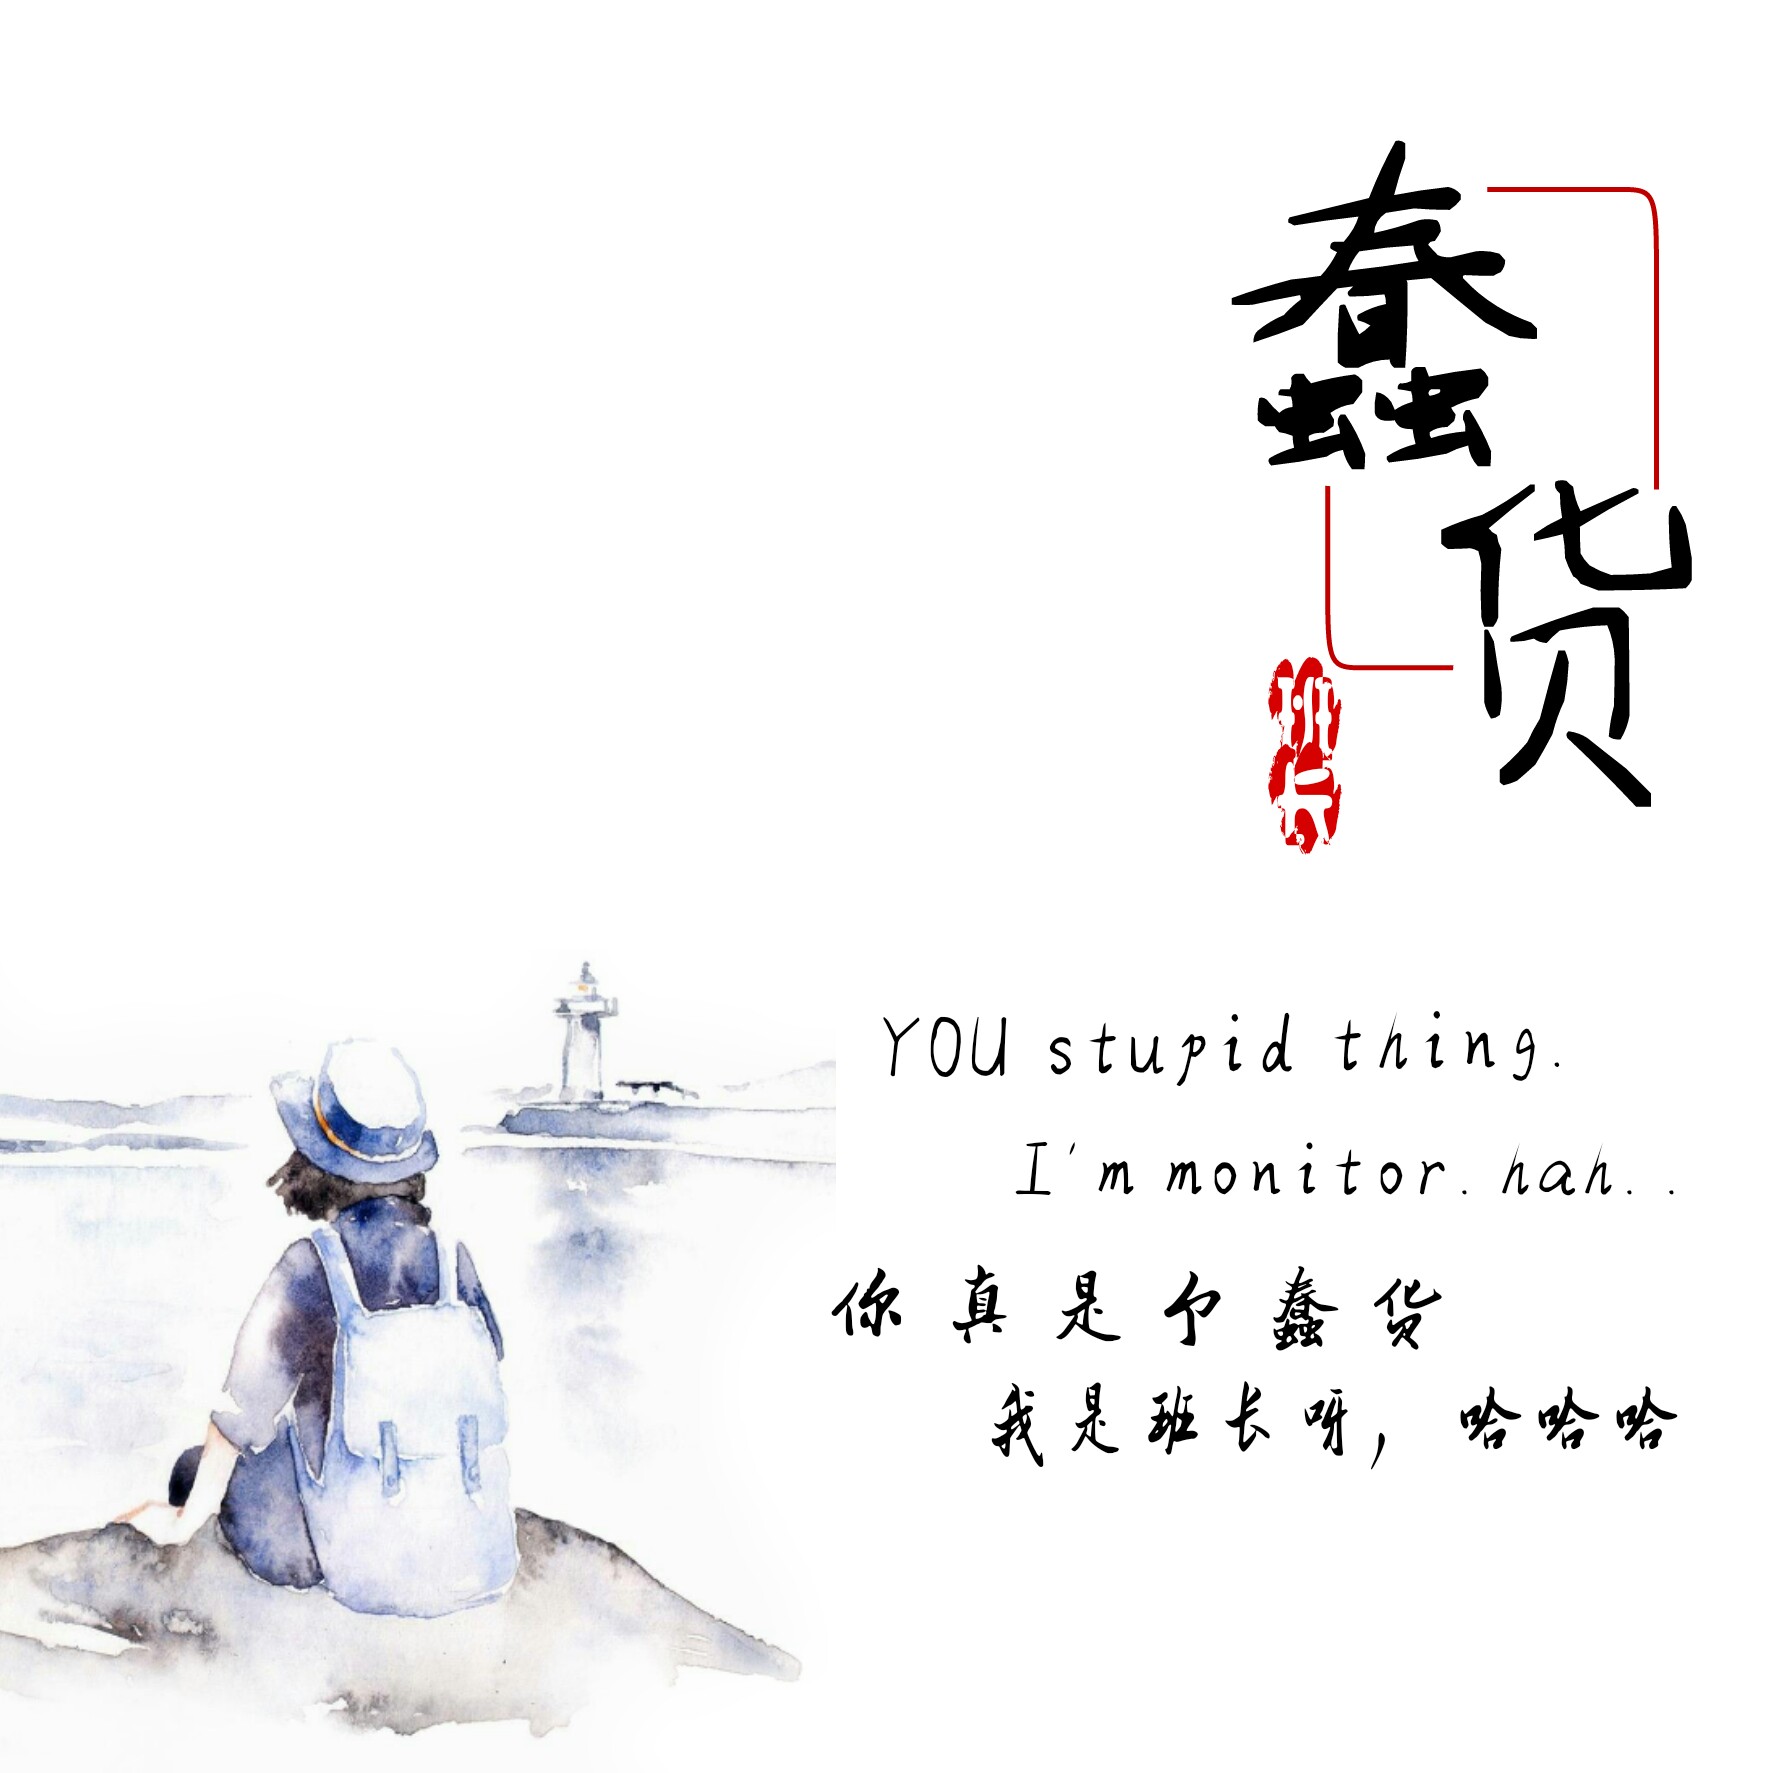 【整合】那些翻唱自日本歌曲的华语经典总览【第一版】 - 哔哩哔哩